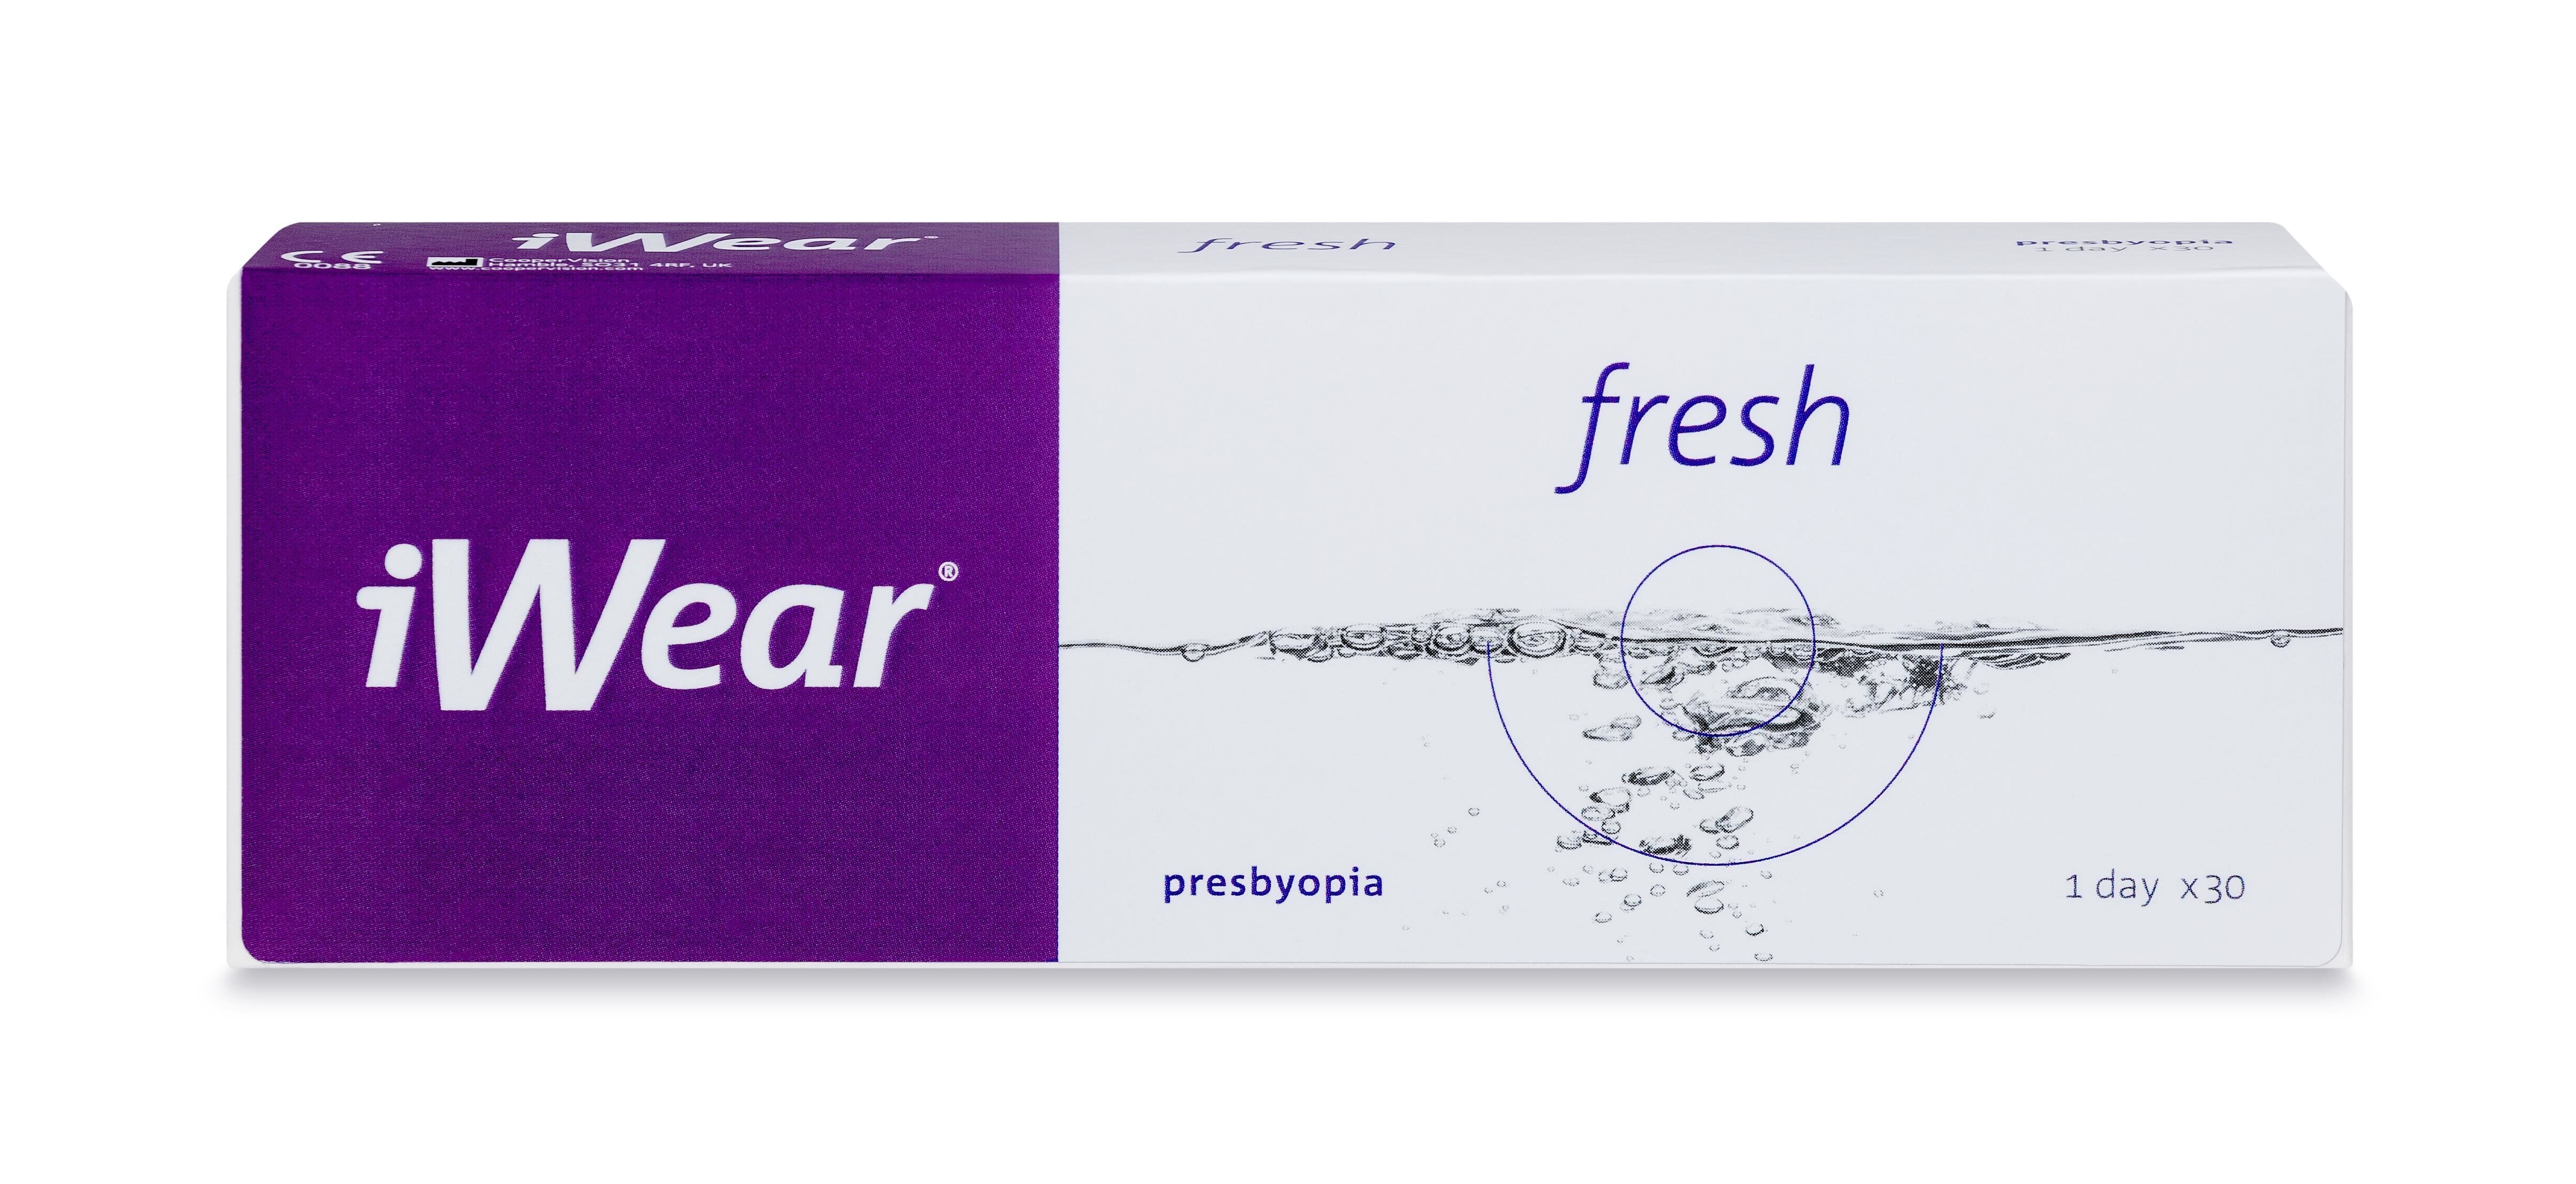 iWear Fresh Presbyopia